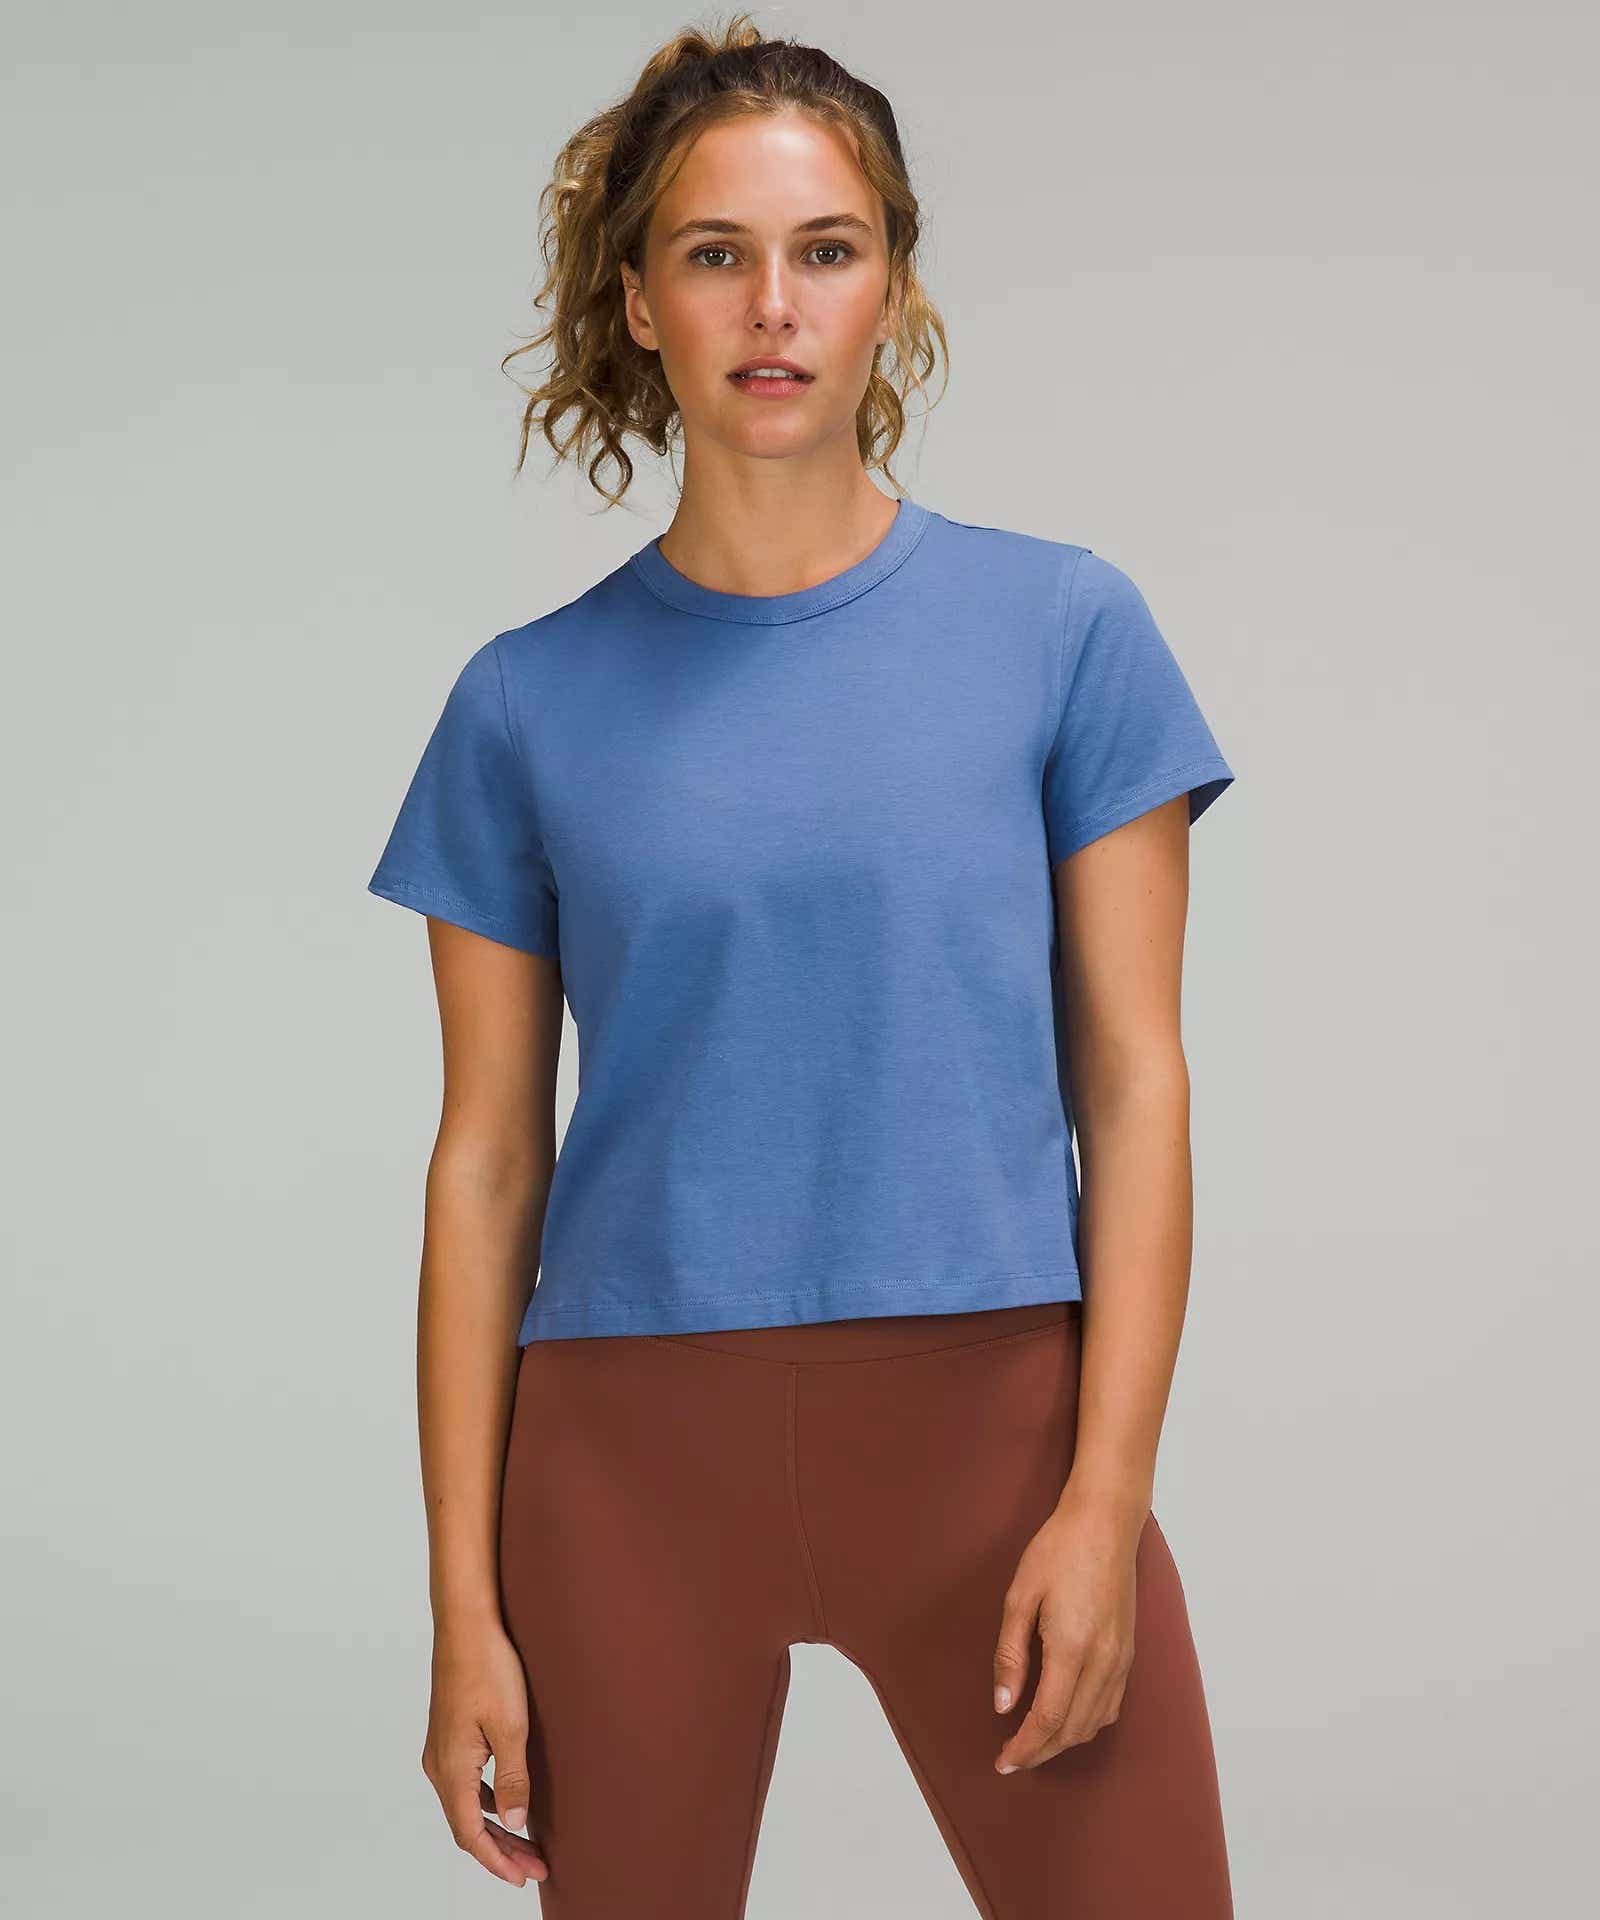 Lululemon classic-fit cotton-blend t-shirt